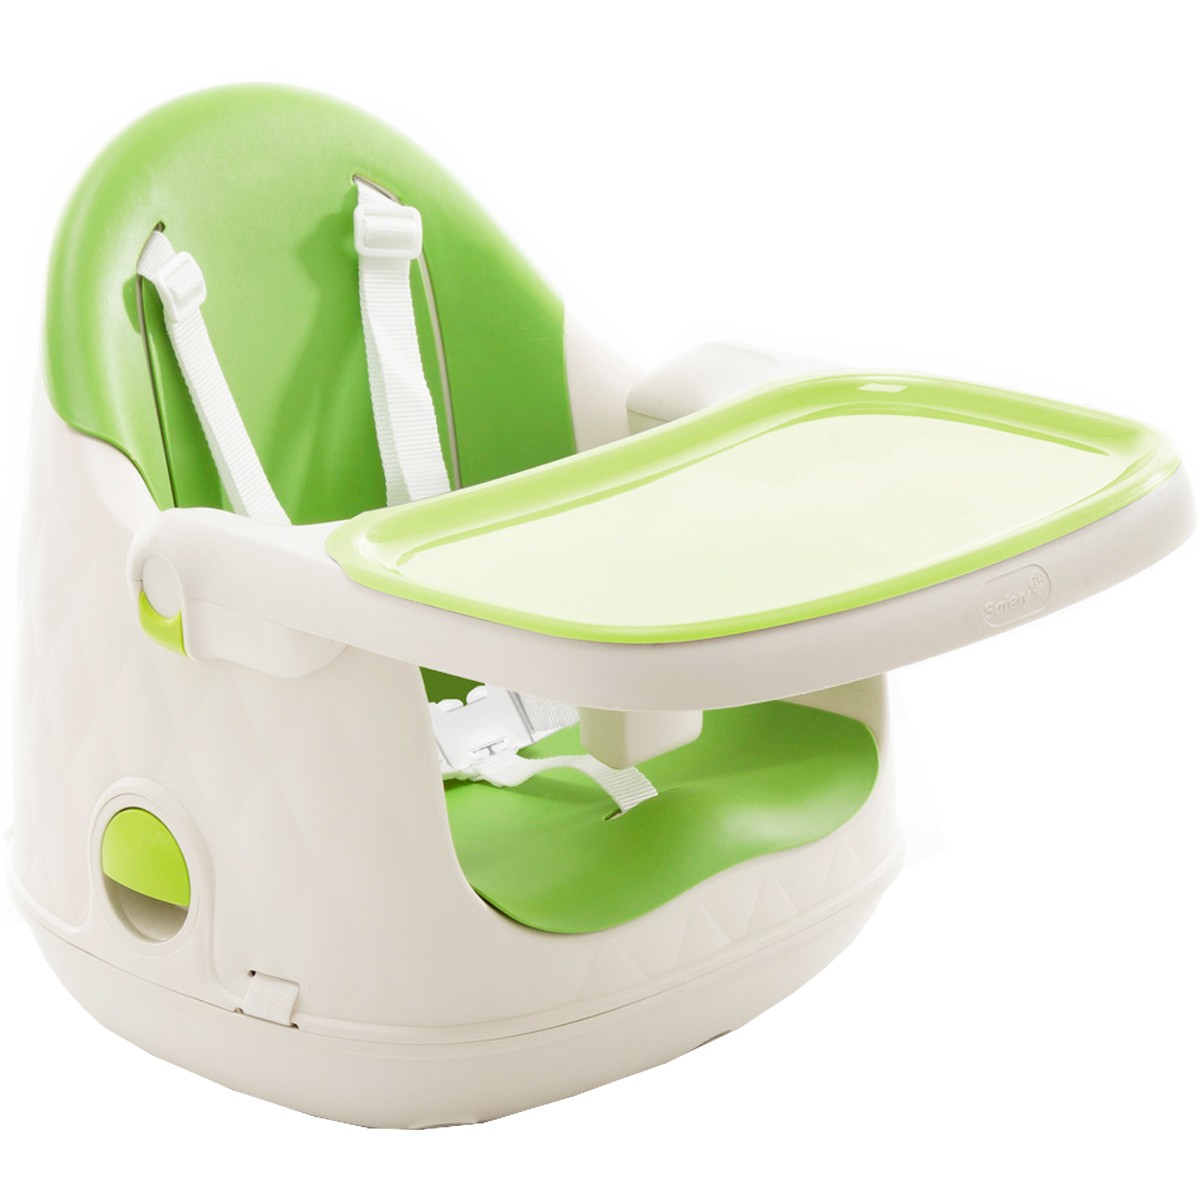 Cadeira de Refeição Infantil Jelly 3em1 Desmontável Portátil Alimentação Criança Bebê De 6 Meses a 25kg Green - Safety 1st